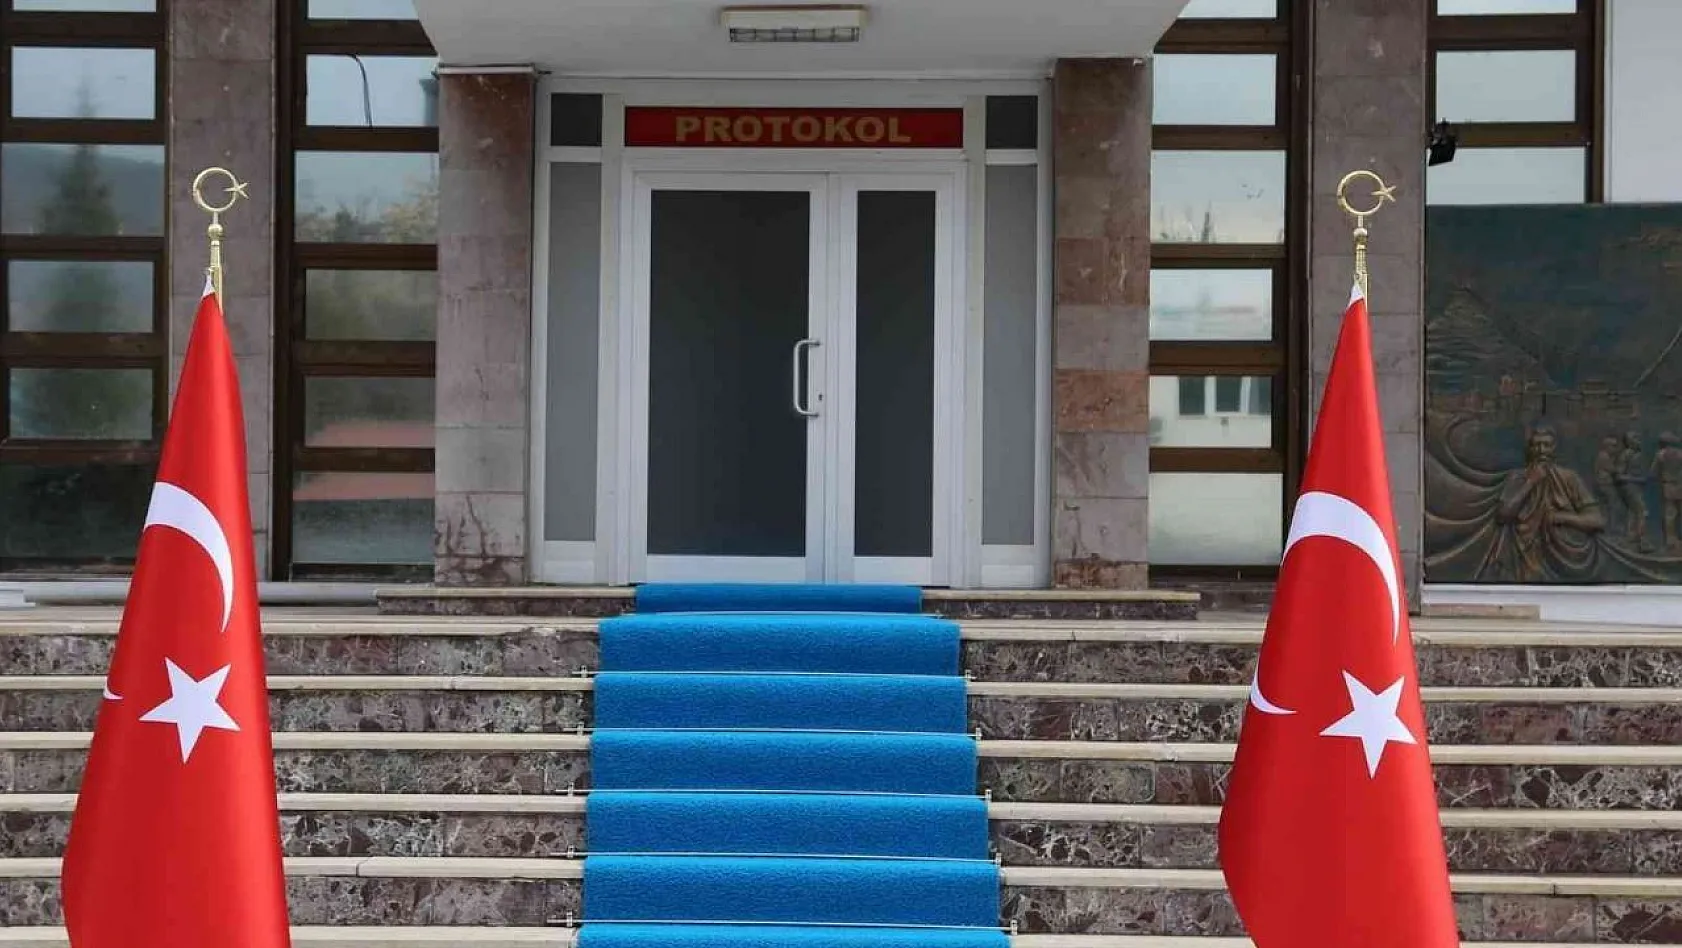 Tunceli'de eylem ve etkinlikler 15 gün süreyle yasaklandı